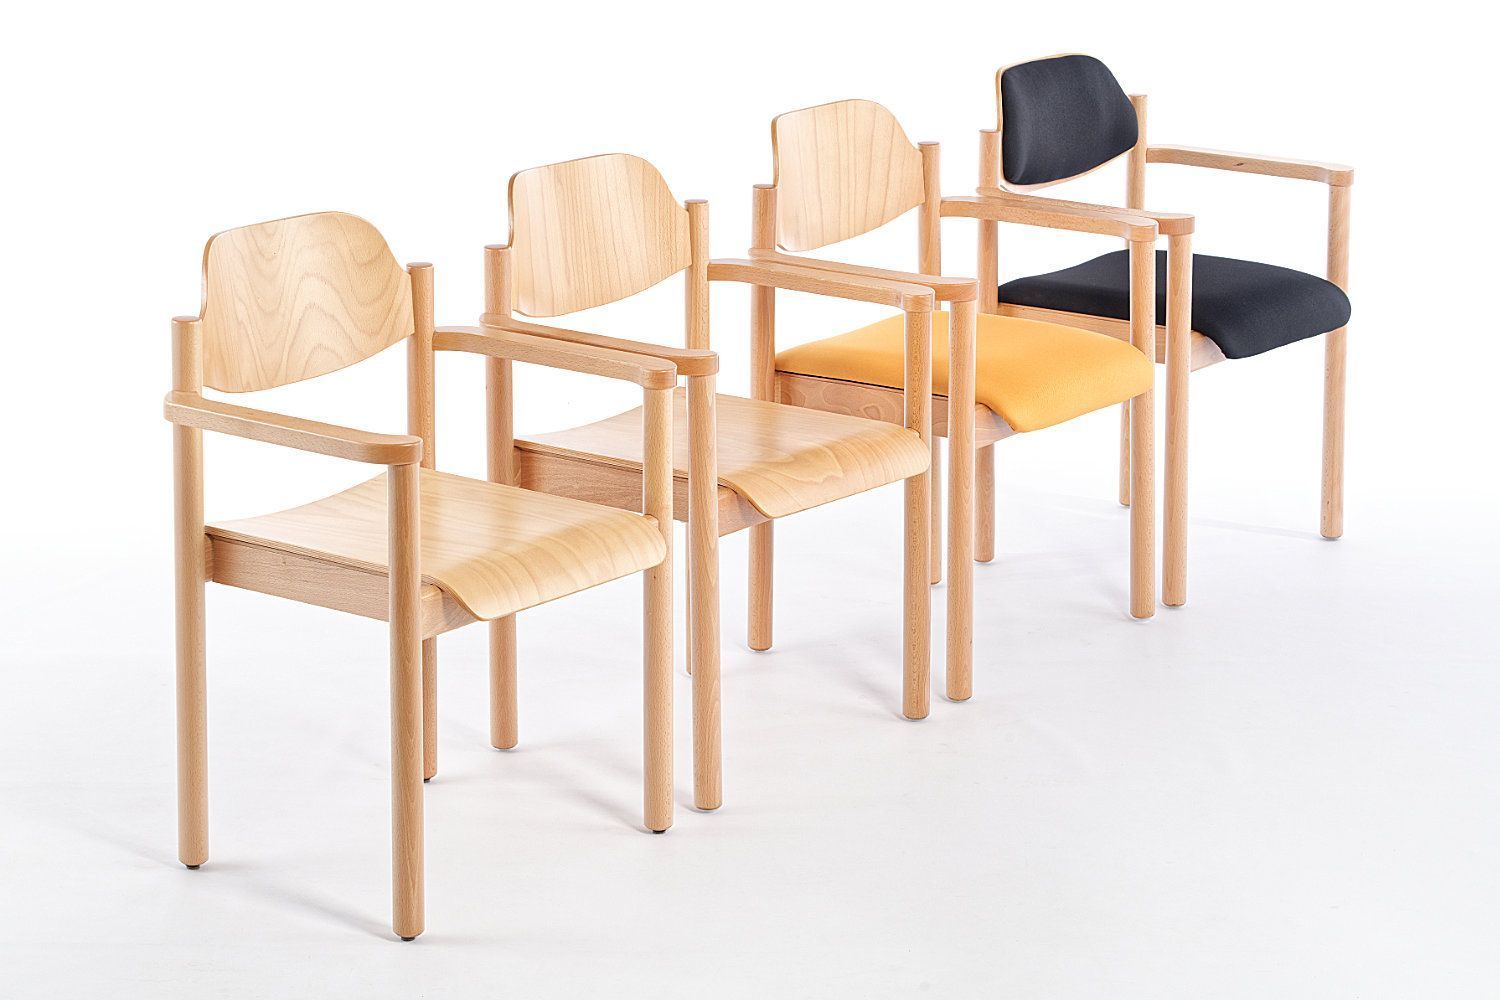 Die Stühle der Dresden Modellfamilie können perfekt miteinander kombiniert werden